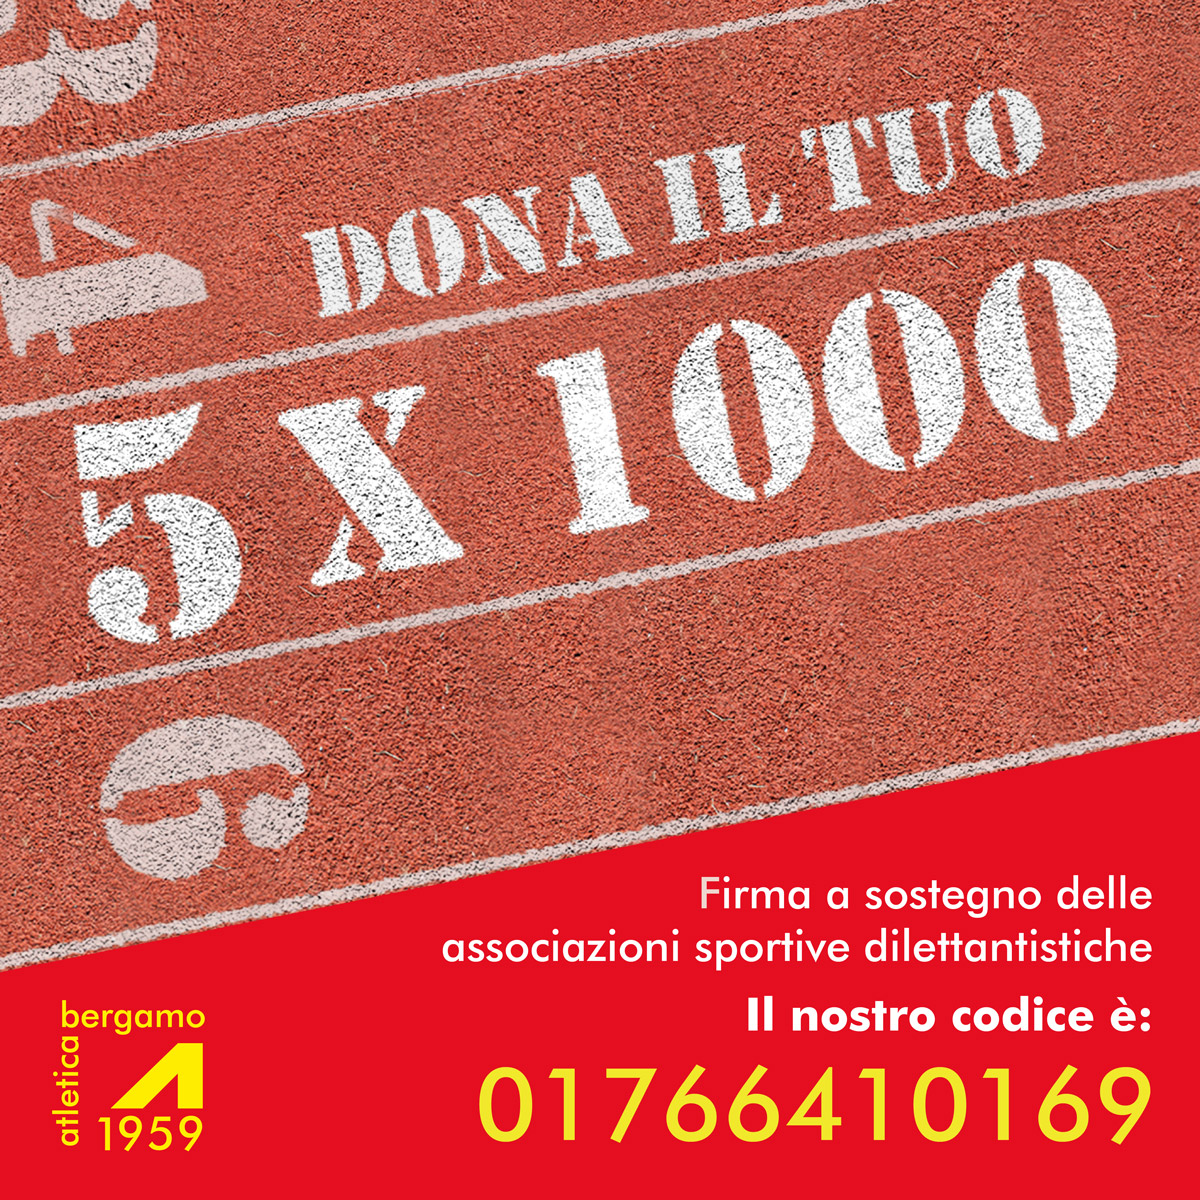 Atletica Bergamo 1959 dona il tuo 5x1000